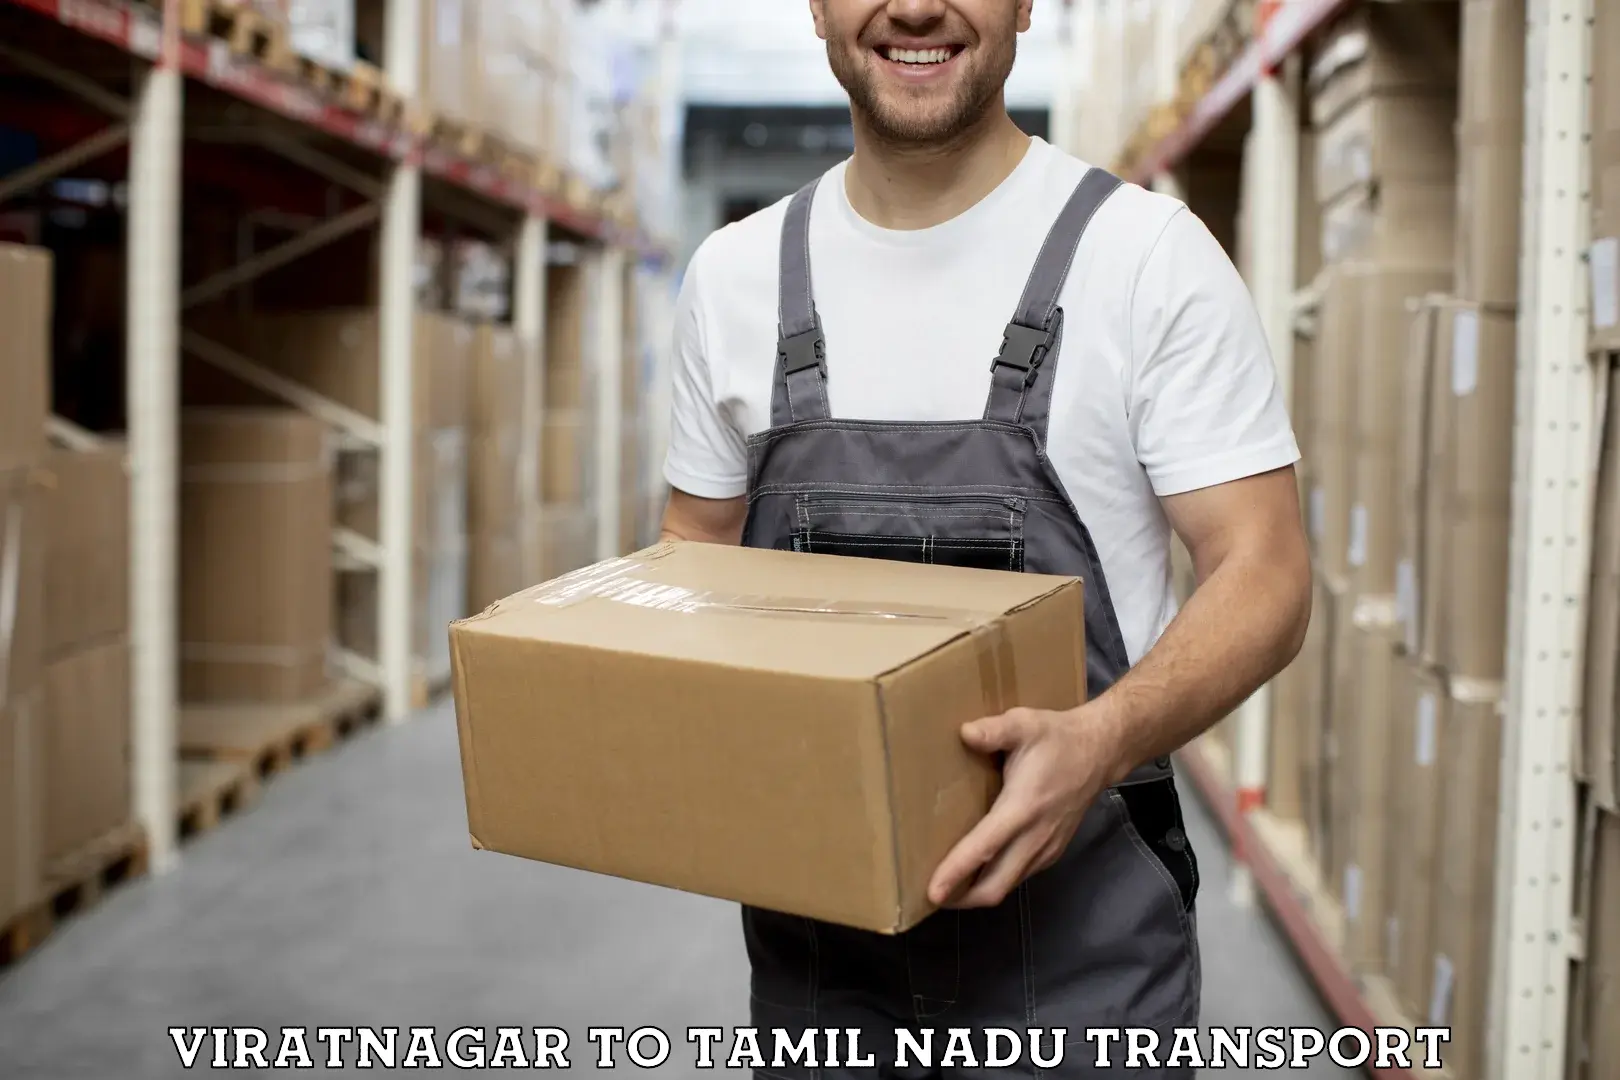 Shipping partner Viratnagar to Gummidipoondi